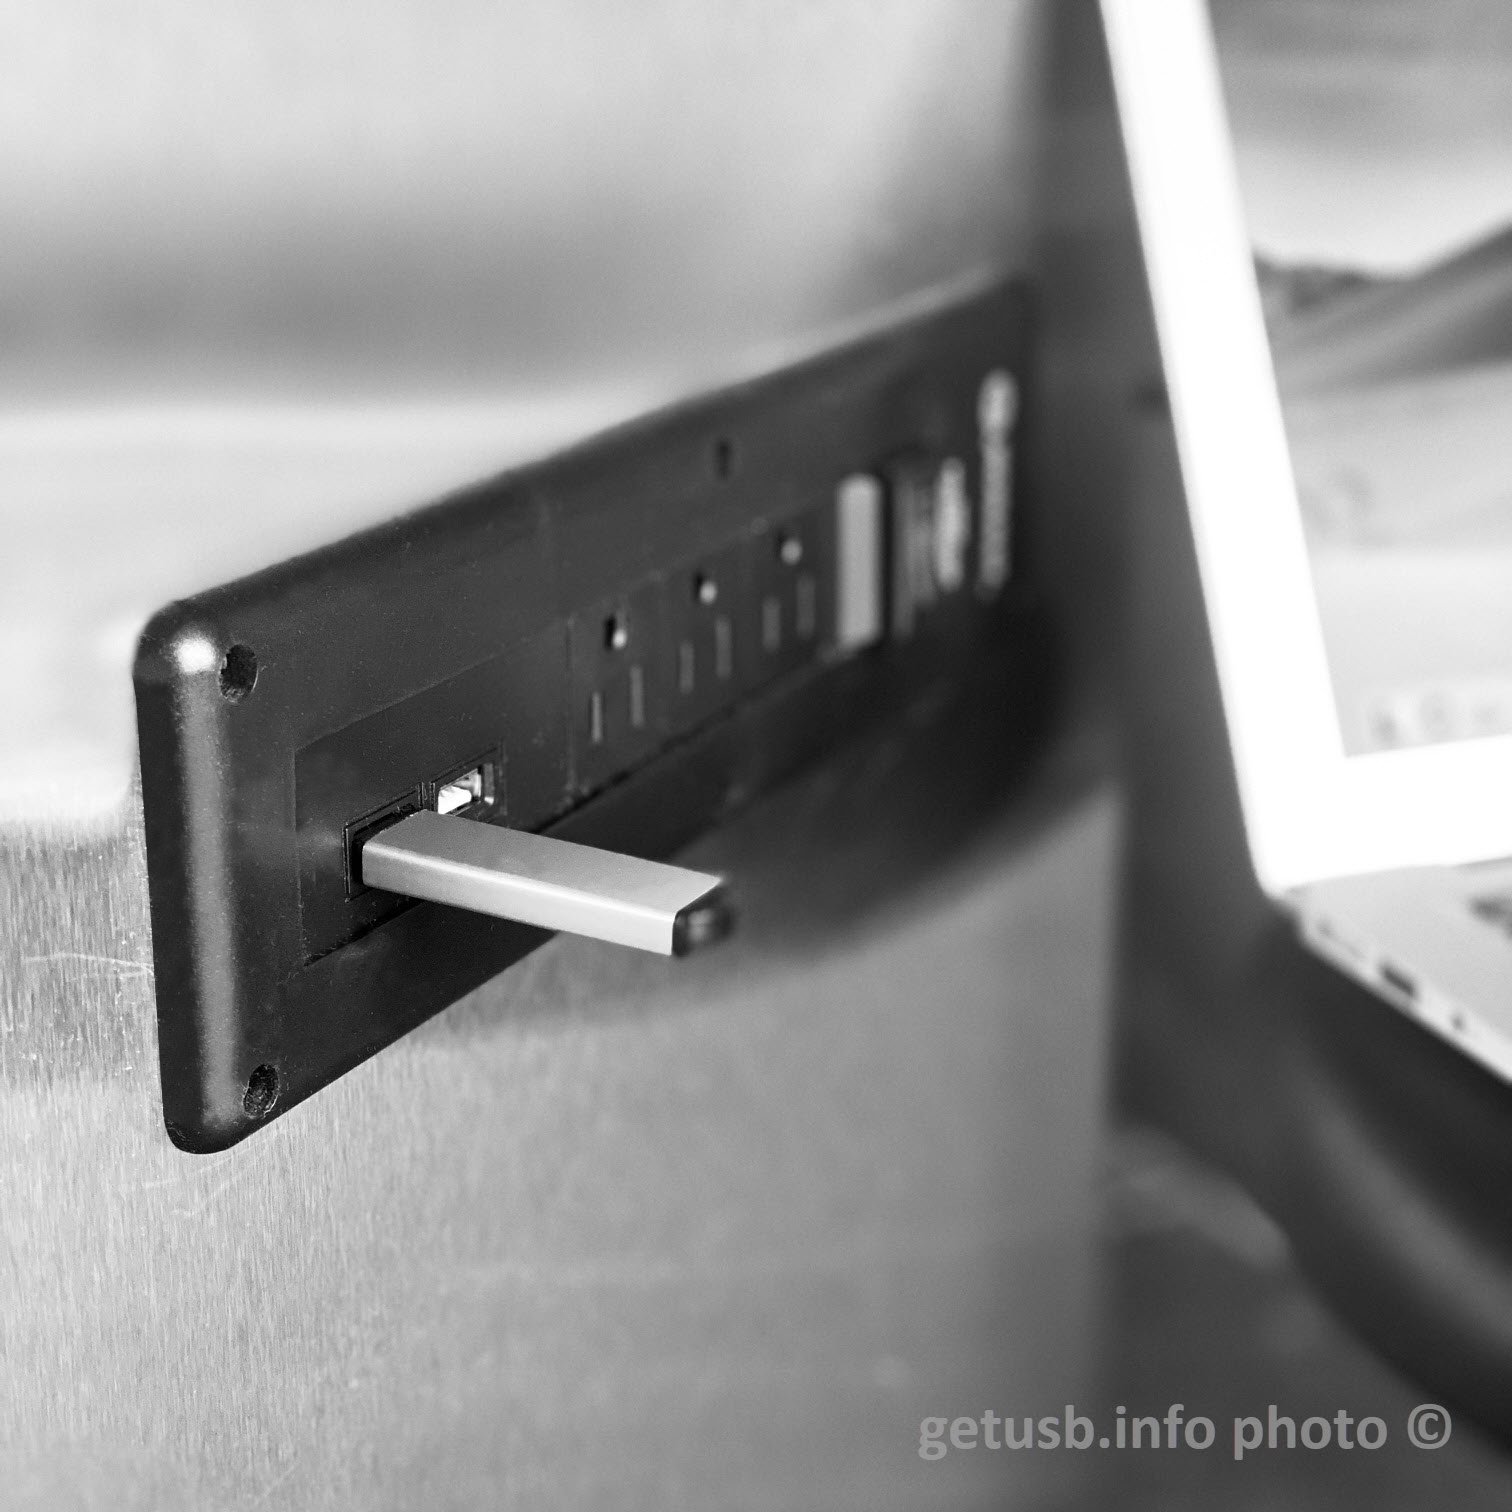 Unità flash USB del sistema di controllo industriale progettata per la sicurezza ICS